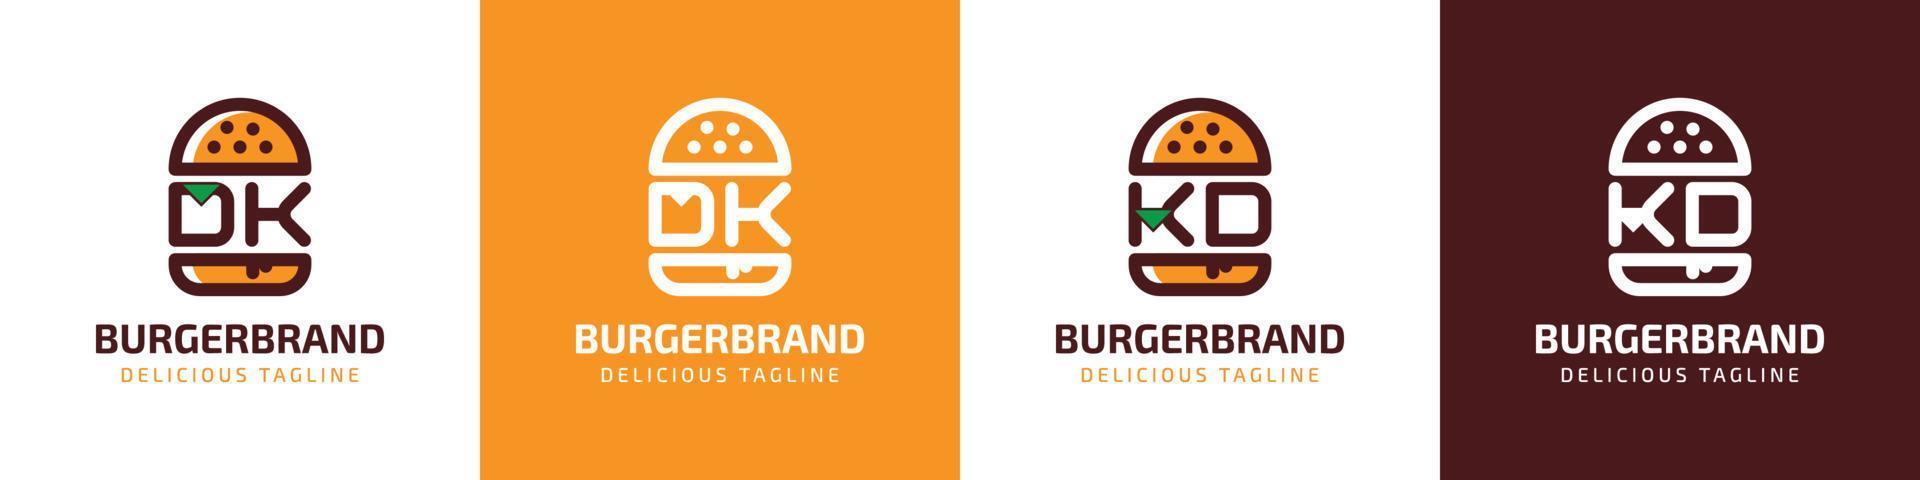 letra dk y kd hamburguesa logo, adecuado para ninguna negocio relacionado a hamburguesa con dk o kd iniciales. vector